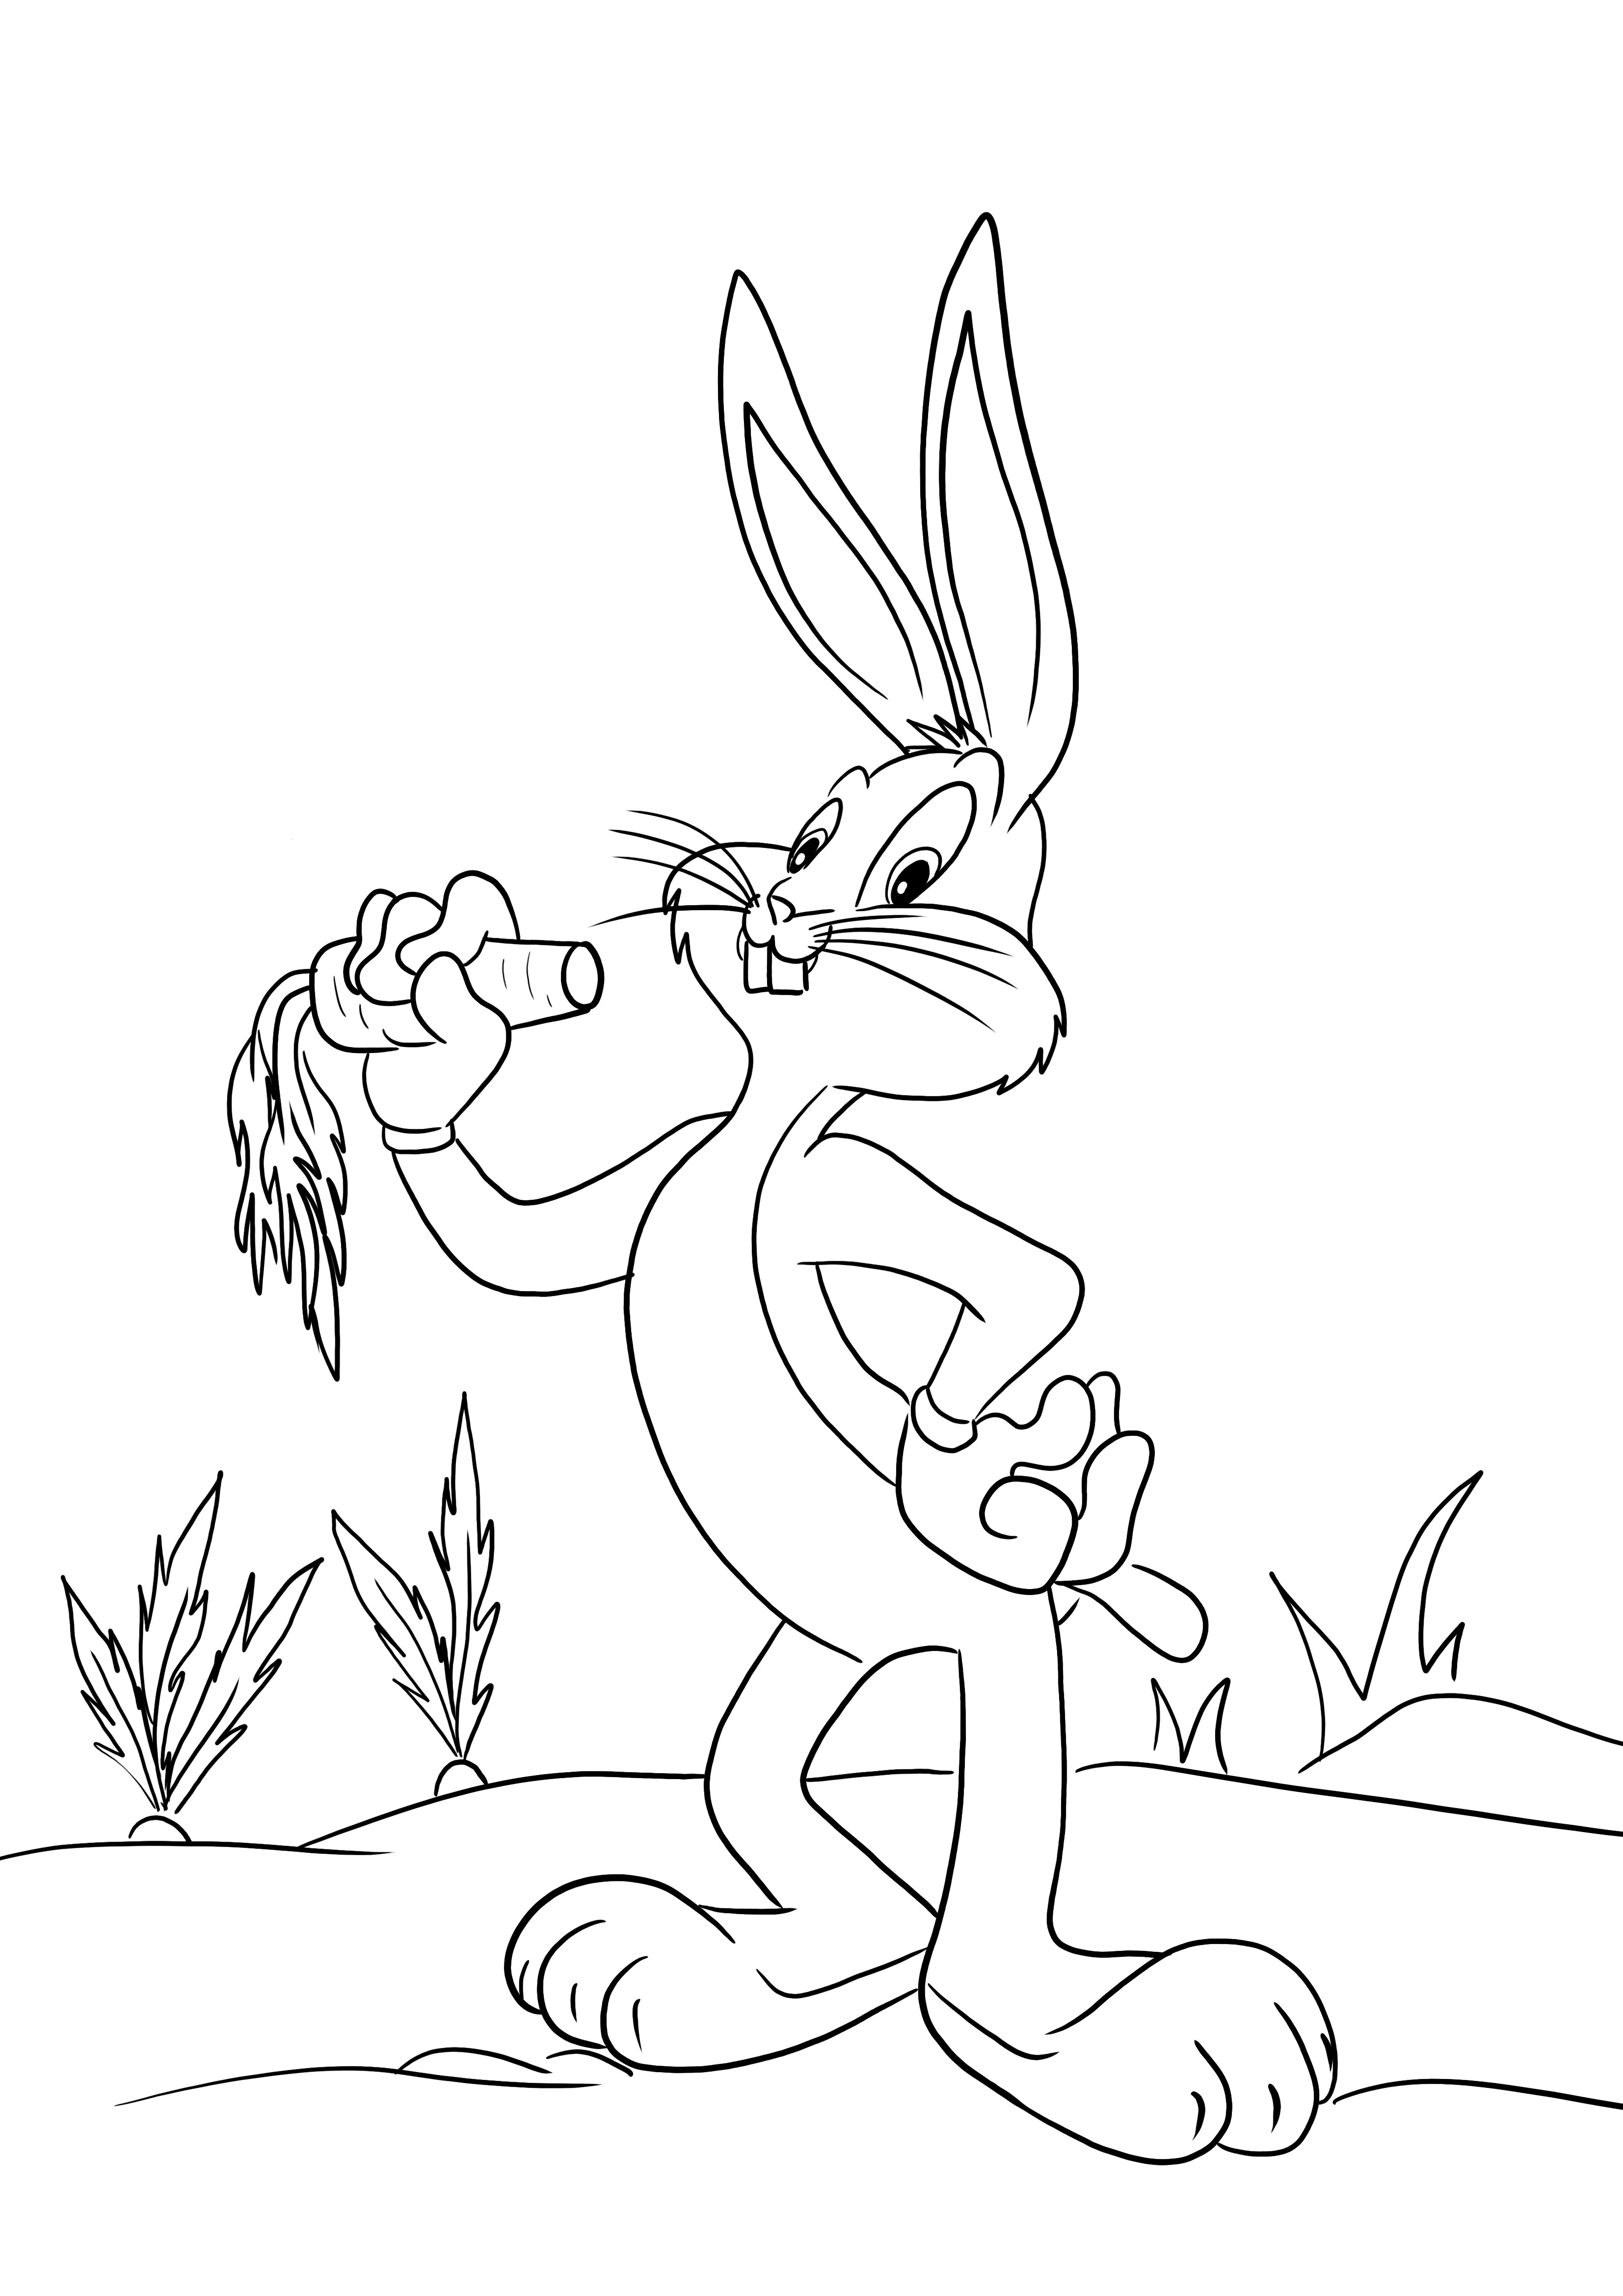 Image facile à colorier de Bugs Bunny pour que les enfants colorient et s'amusent